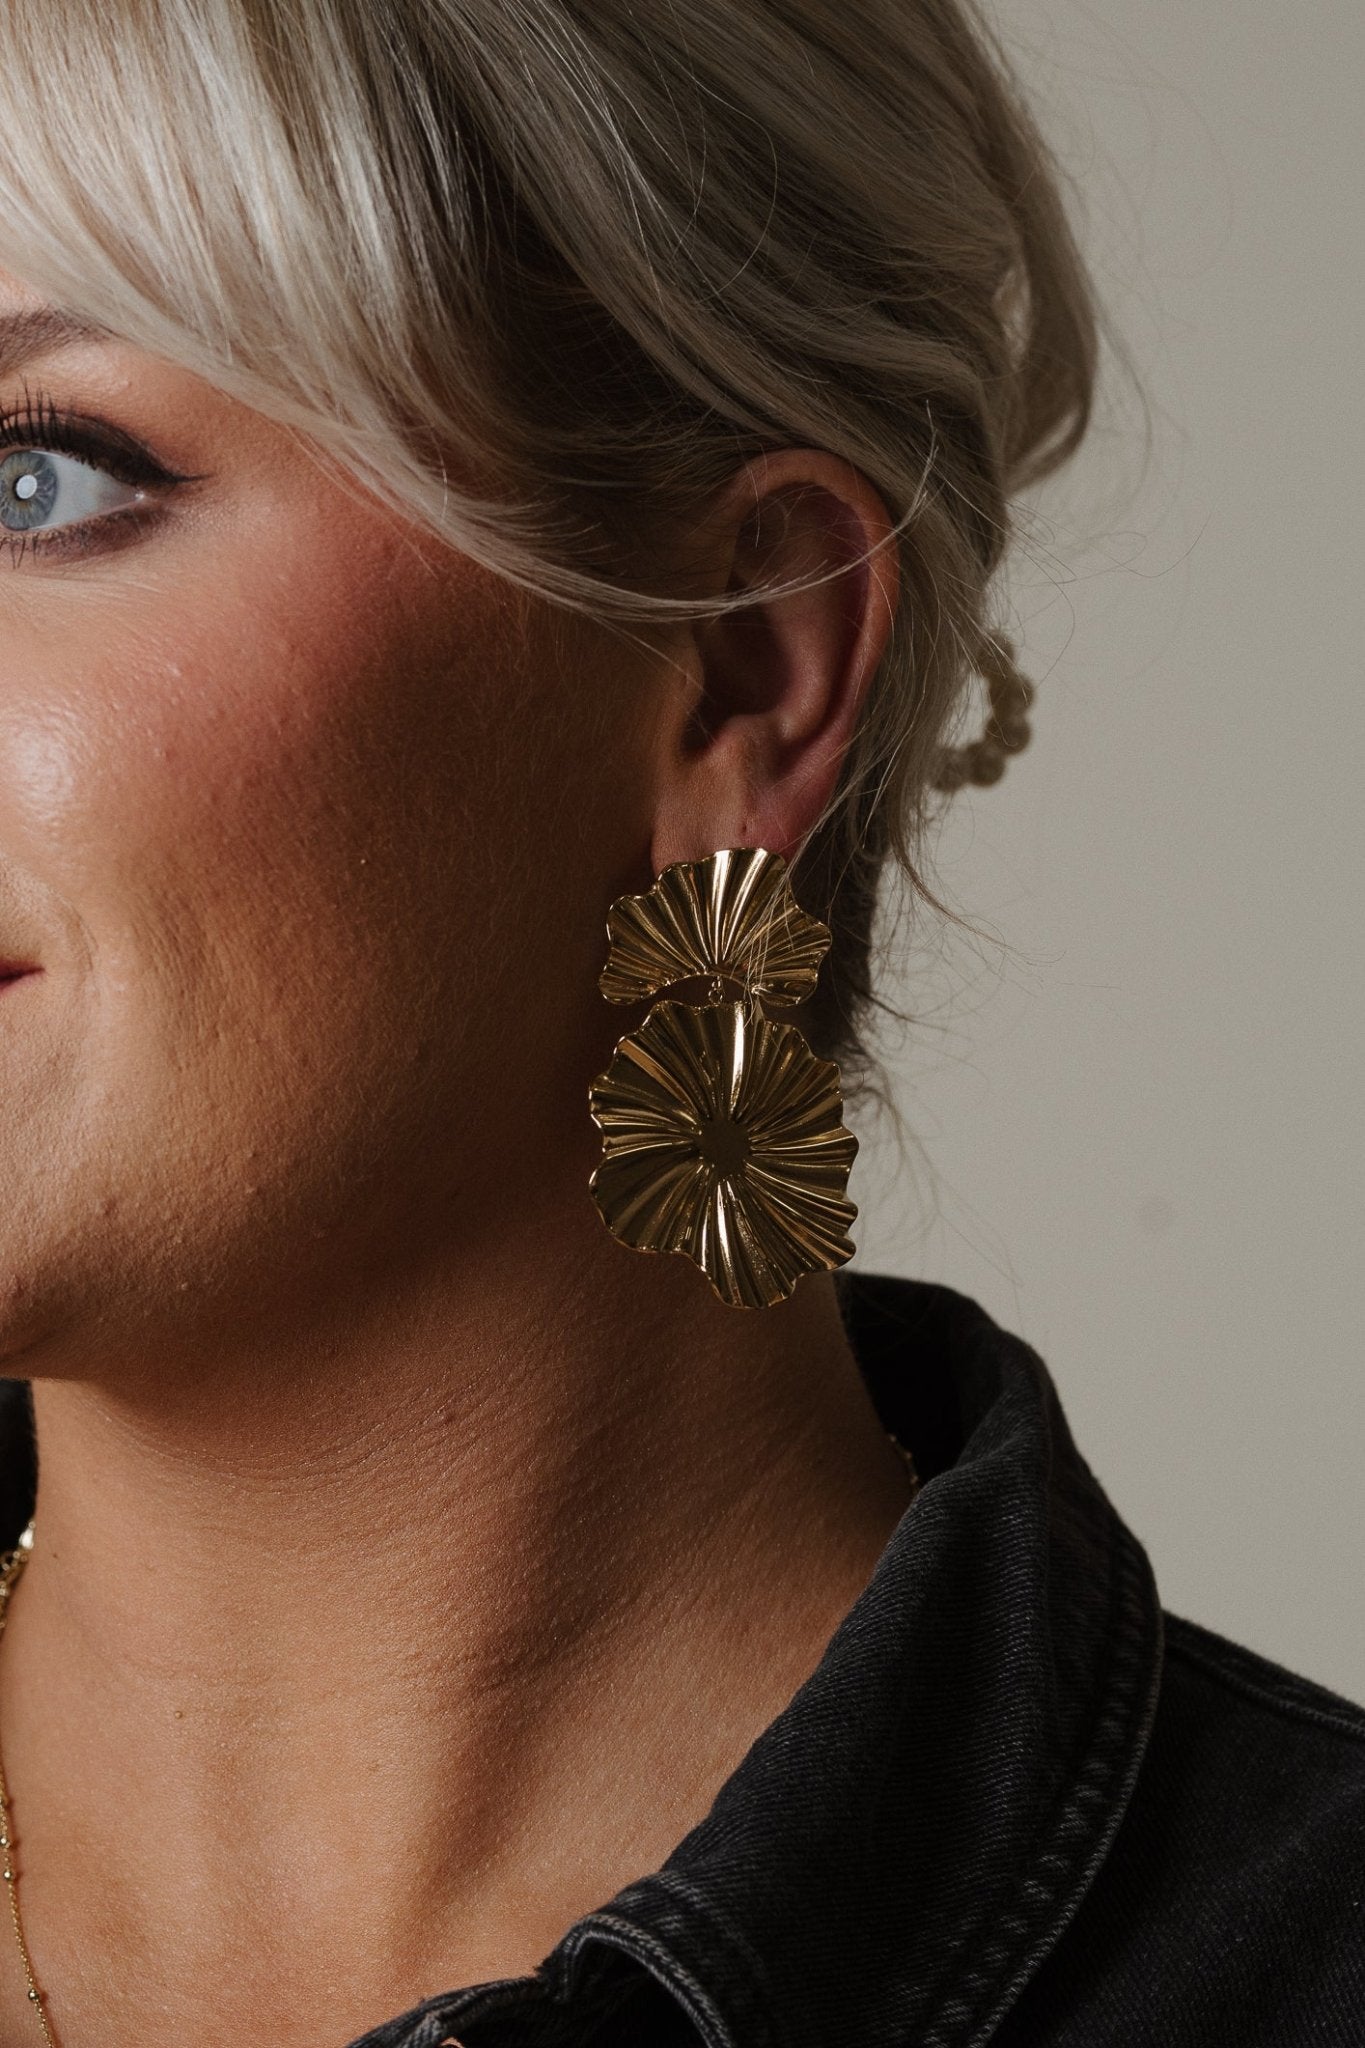 Beth Oversized Earring In Gold - The Walk in Wardrobe